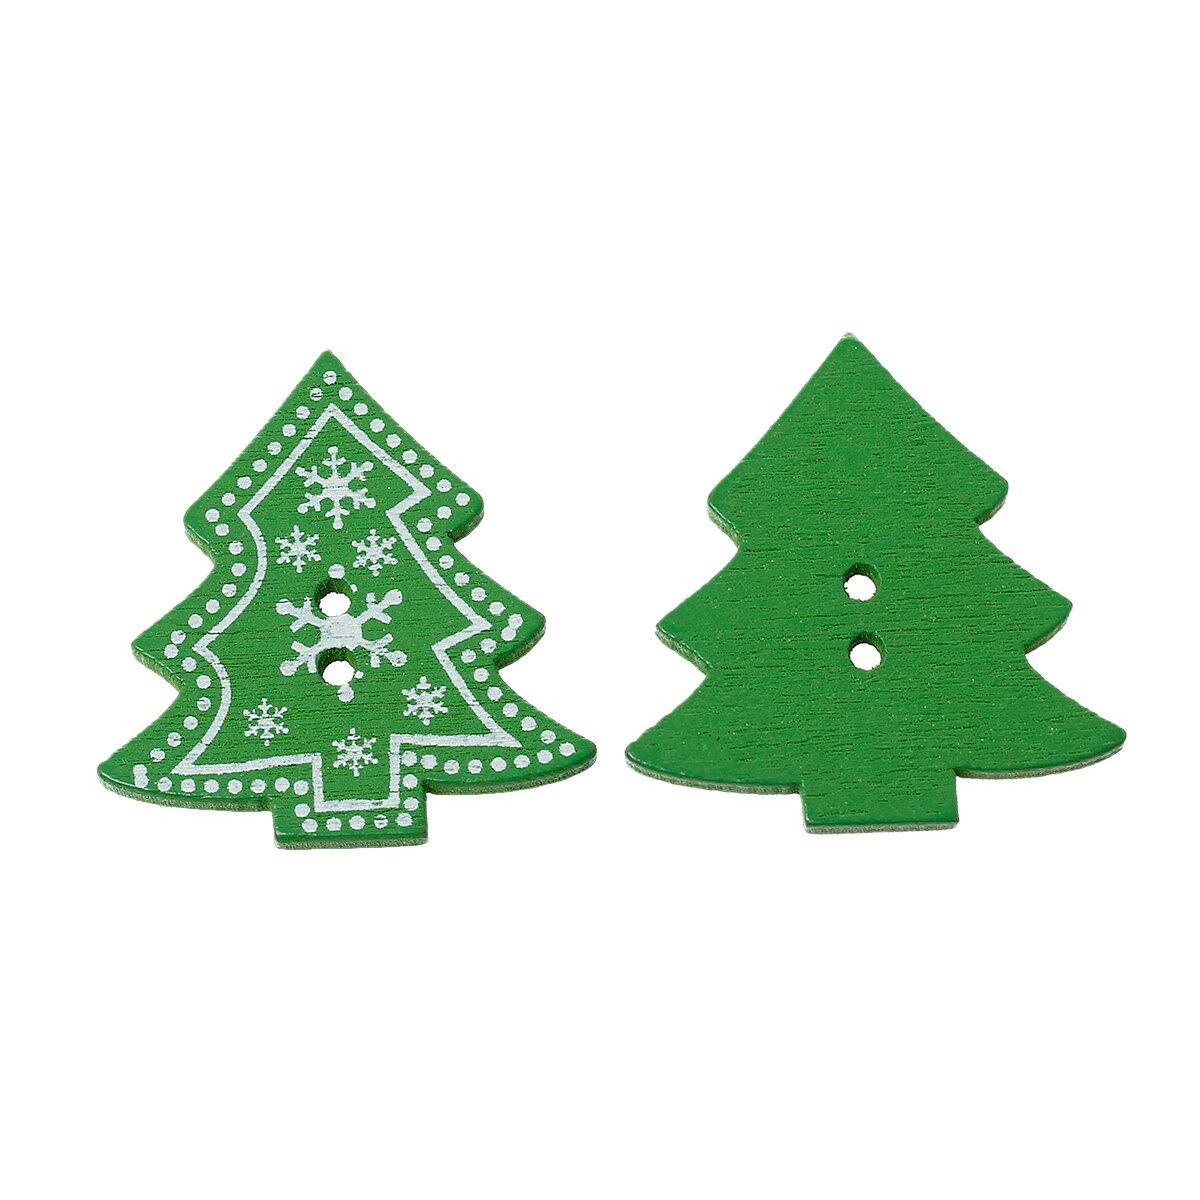 Hout Naaien Button Scrapbooking kerstboom Groen Twee Gaten Sneeuwvlok 3.2cm (1 2/8 ") x3cm (1 1/8 "), 5 Stuks